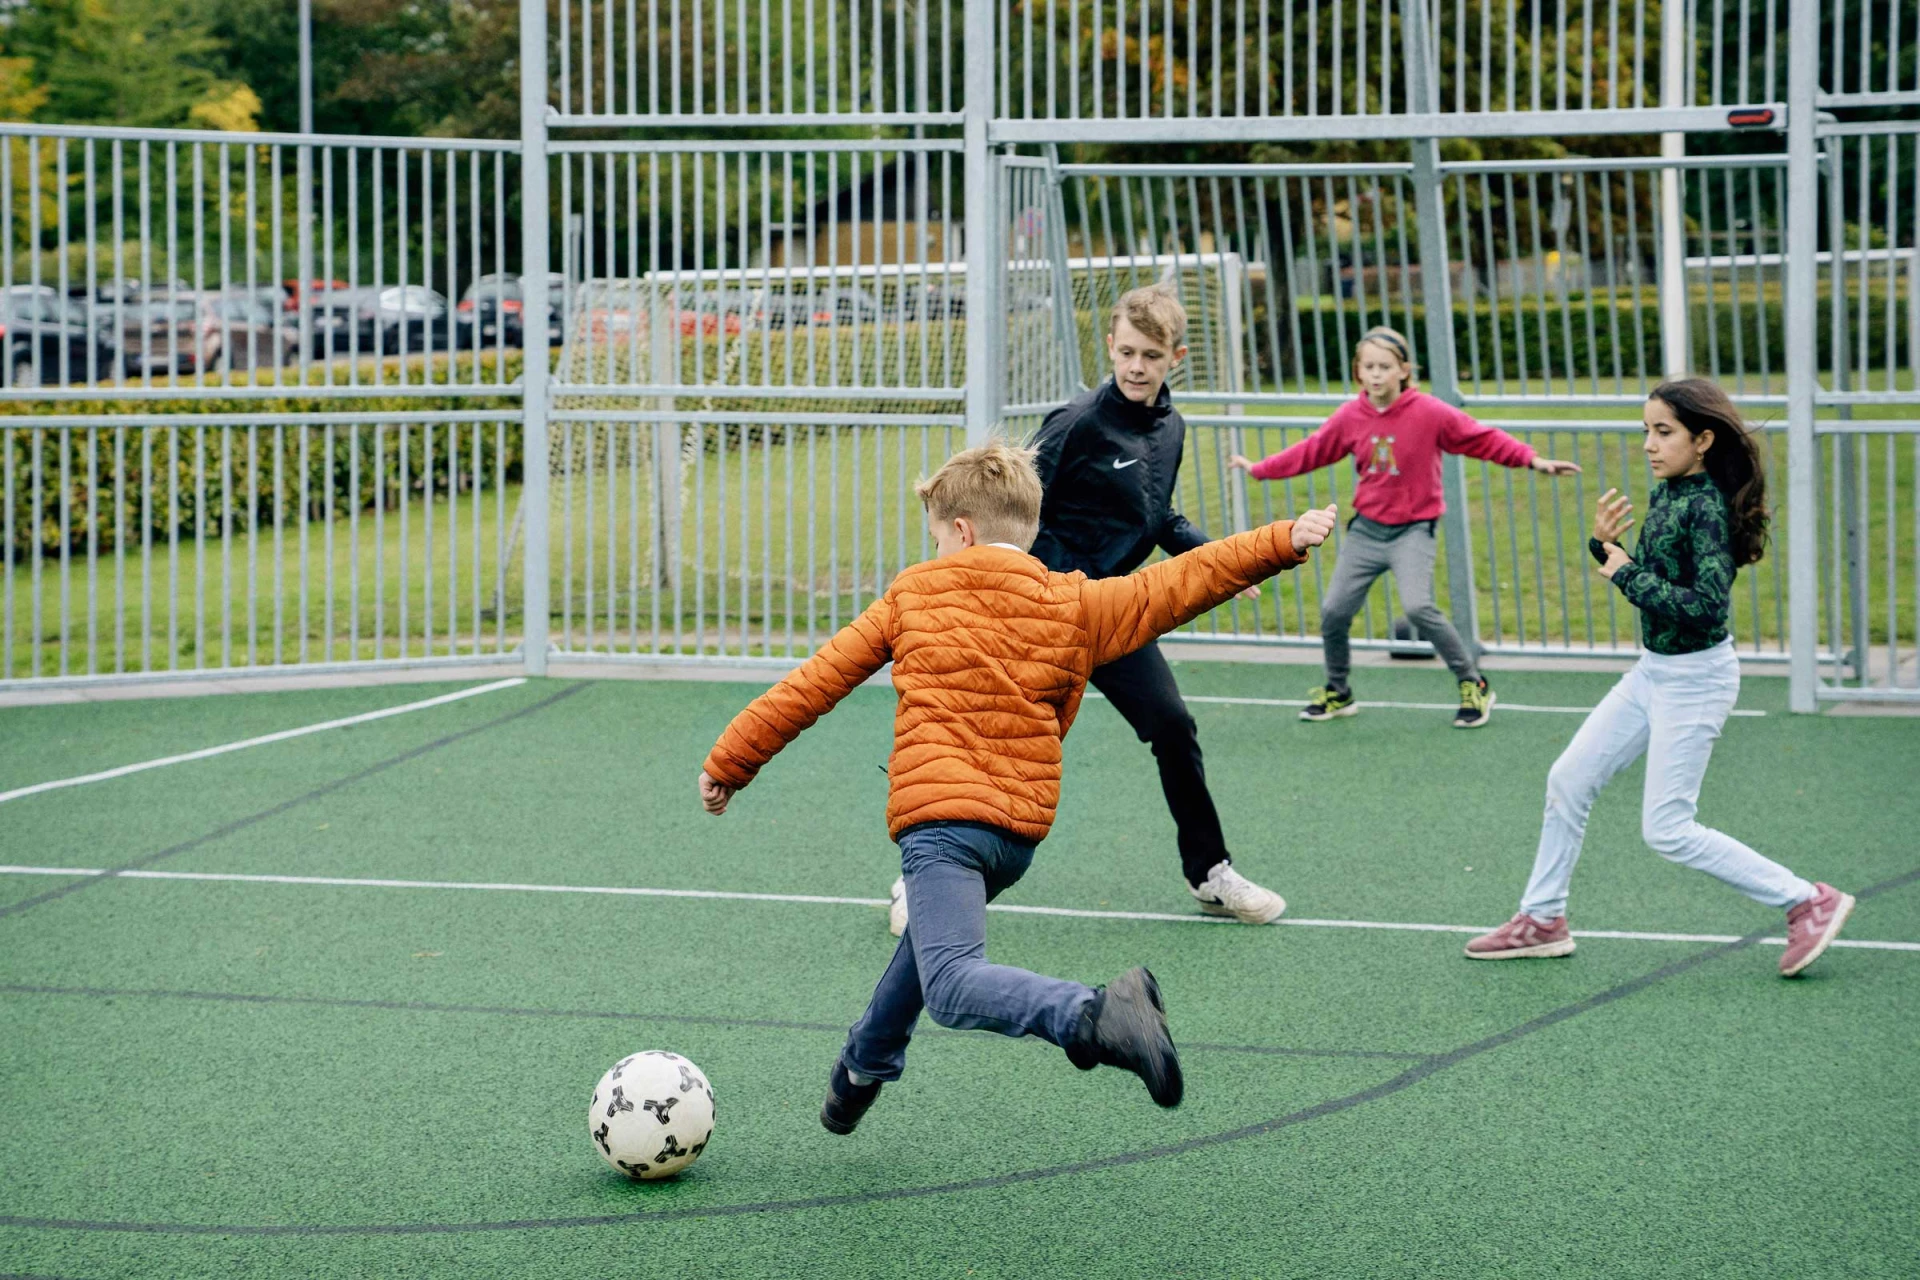 Jugendliche spielen Fußball auf einem Multifunktionsfeld auf dem Spielplatz ihrer Schule